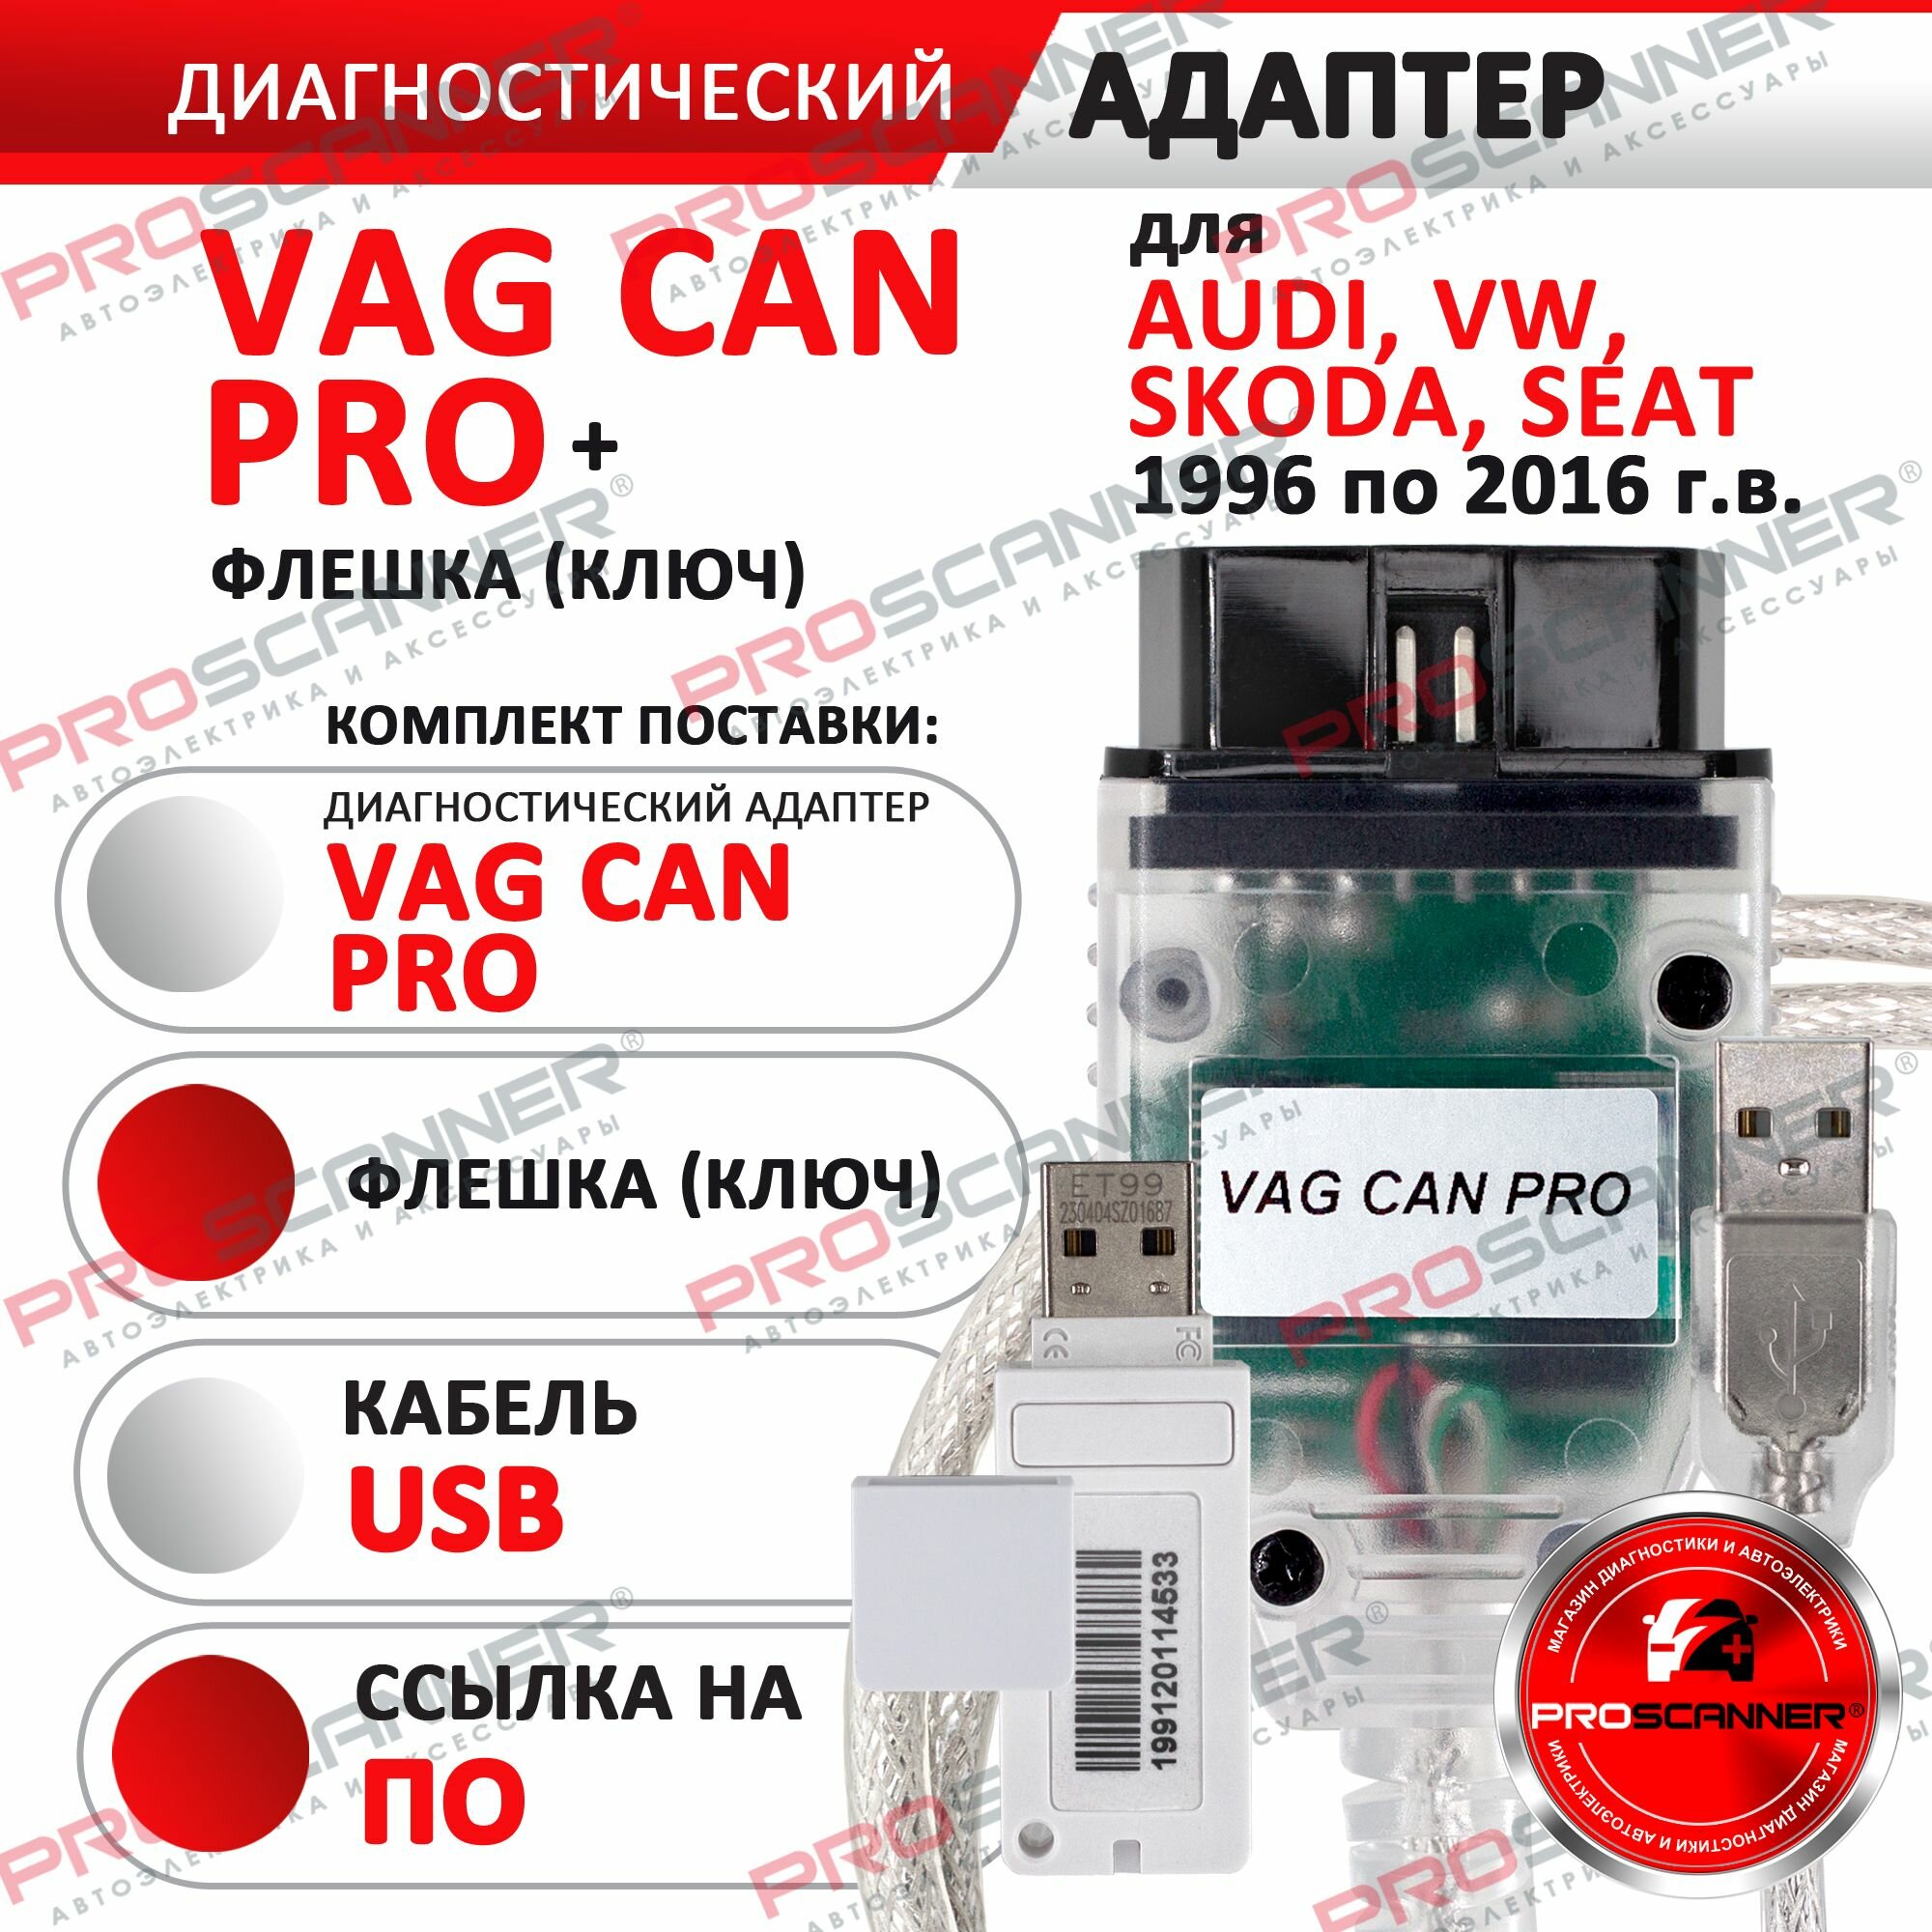 Автосканер для VAG CAN PRO адаптер для программирования и диагностики автомобилей для Audi, Volkswagen, Skoda с флешкой